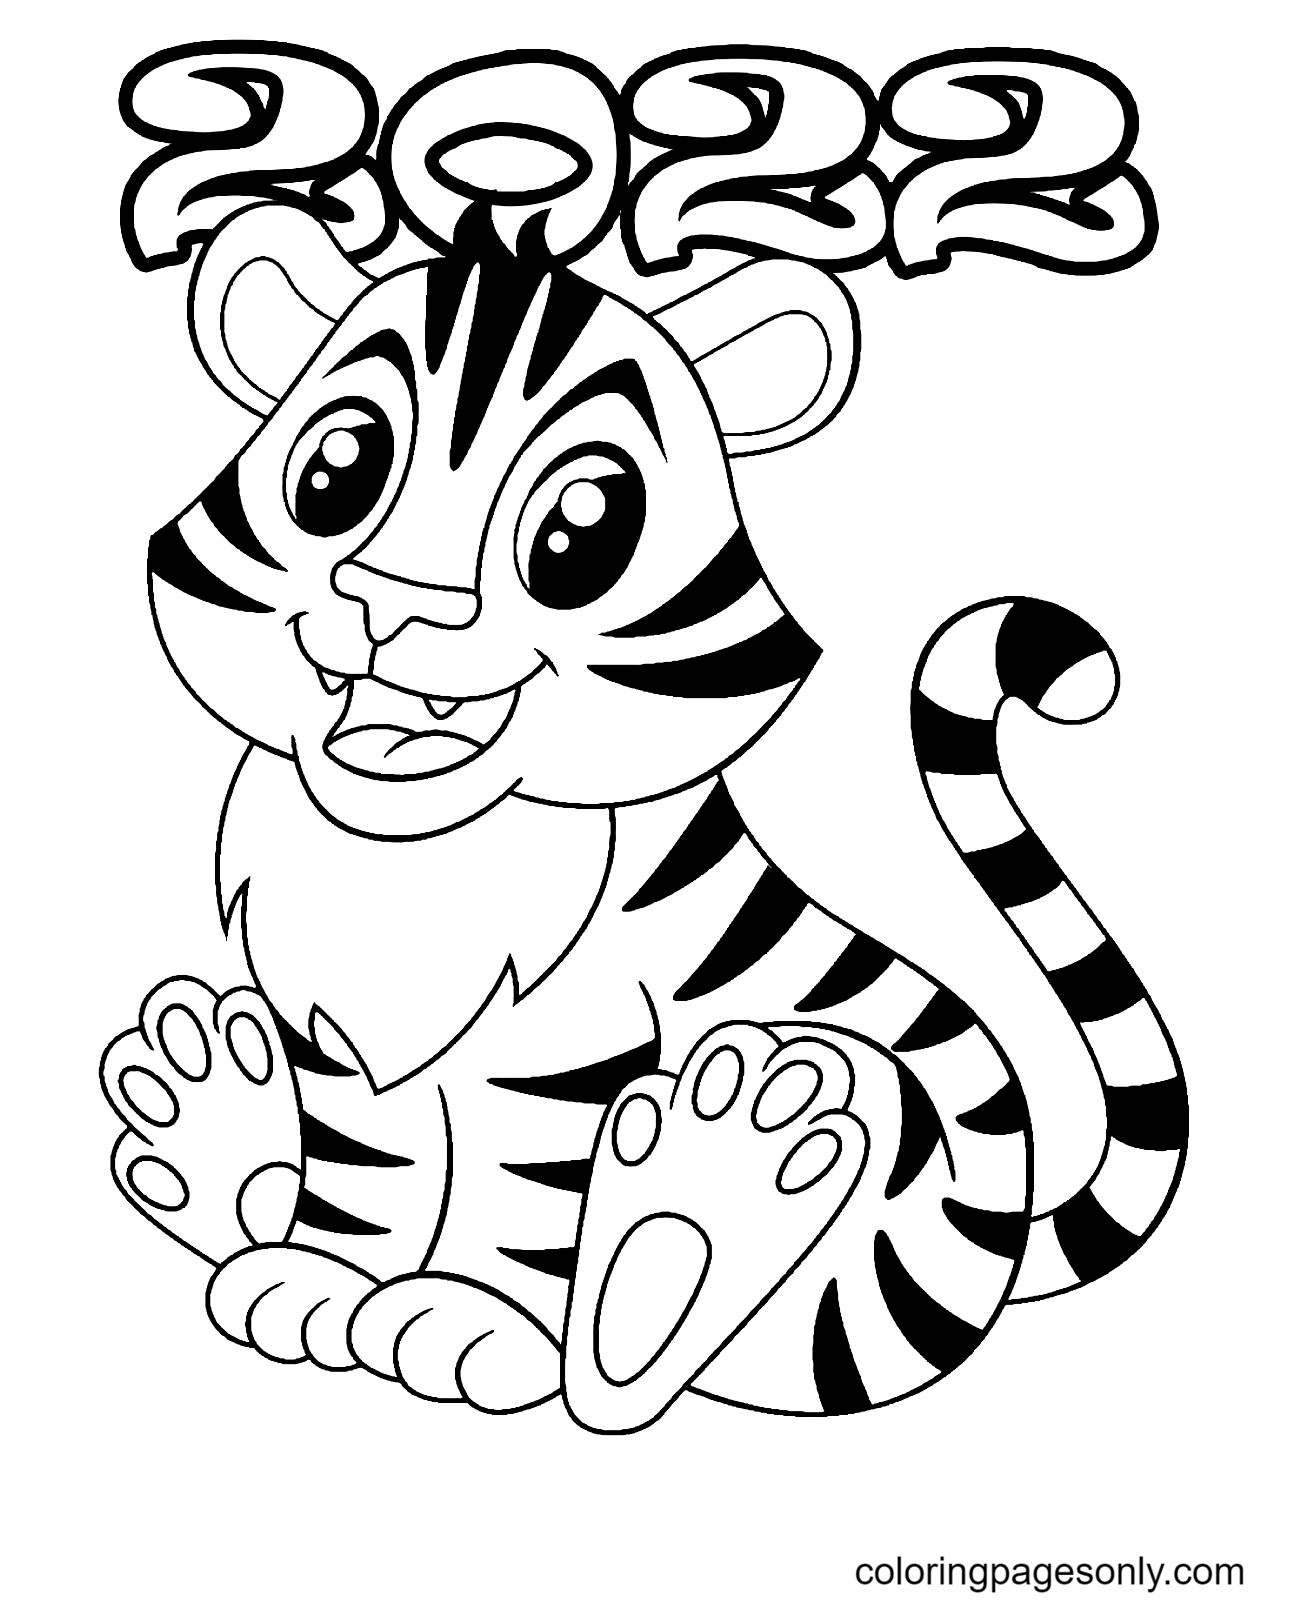 Раскраска Тигр 2022 года